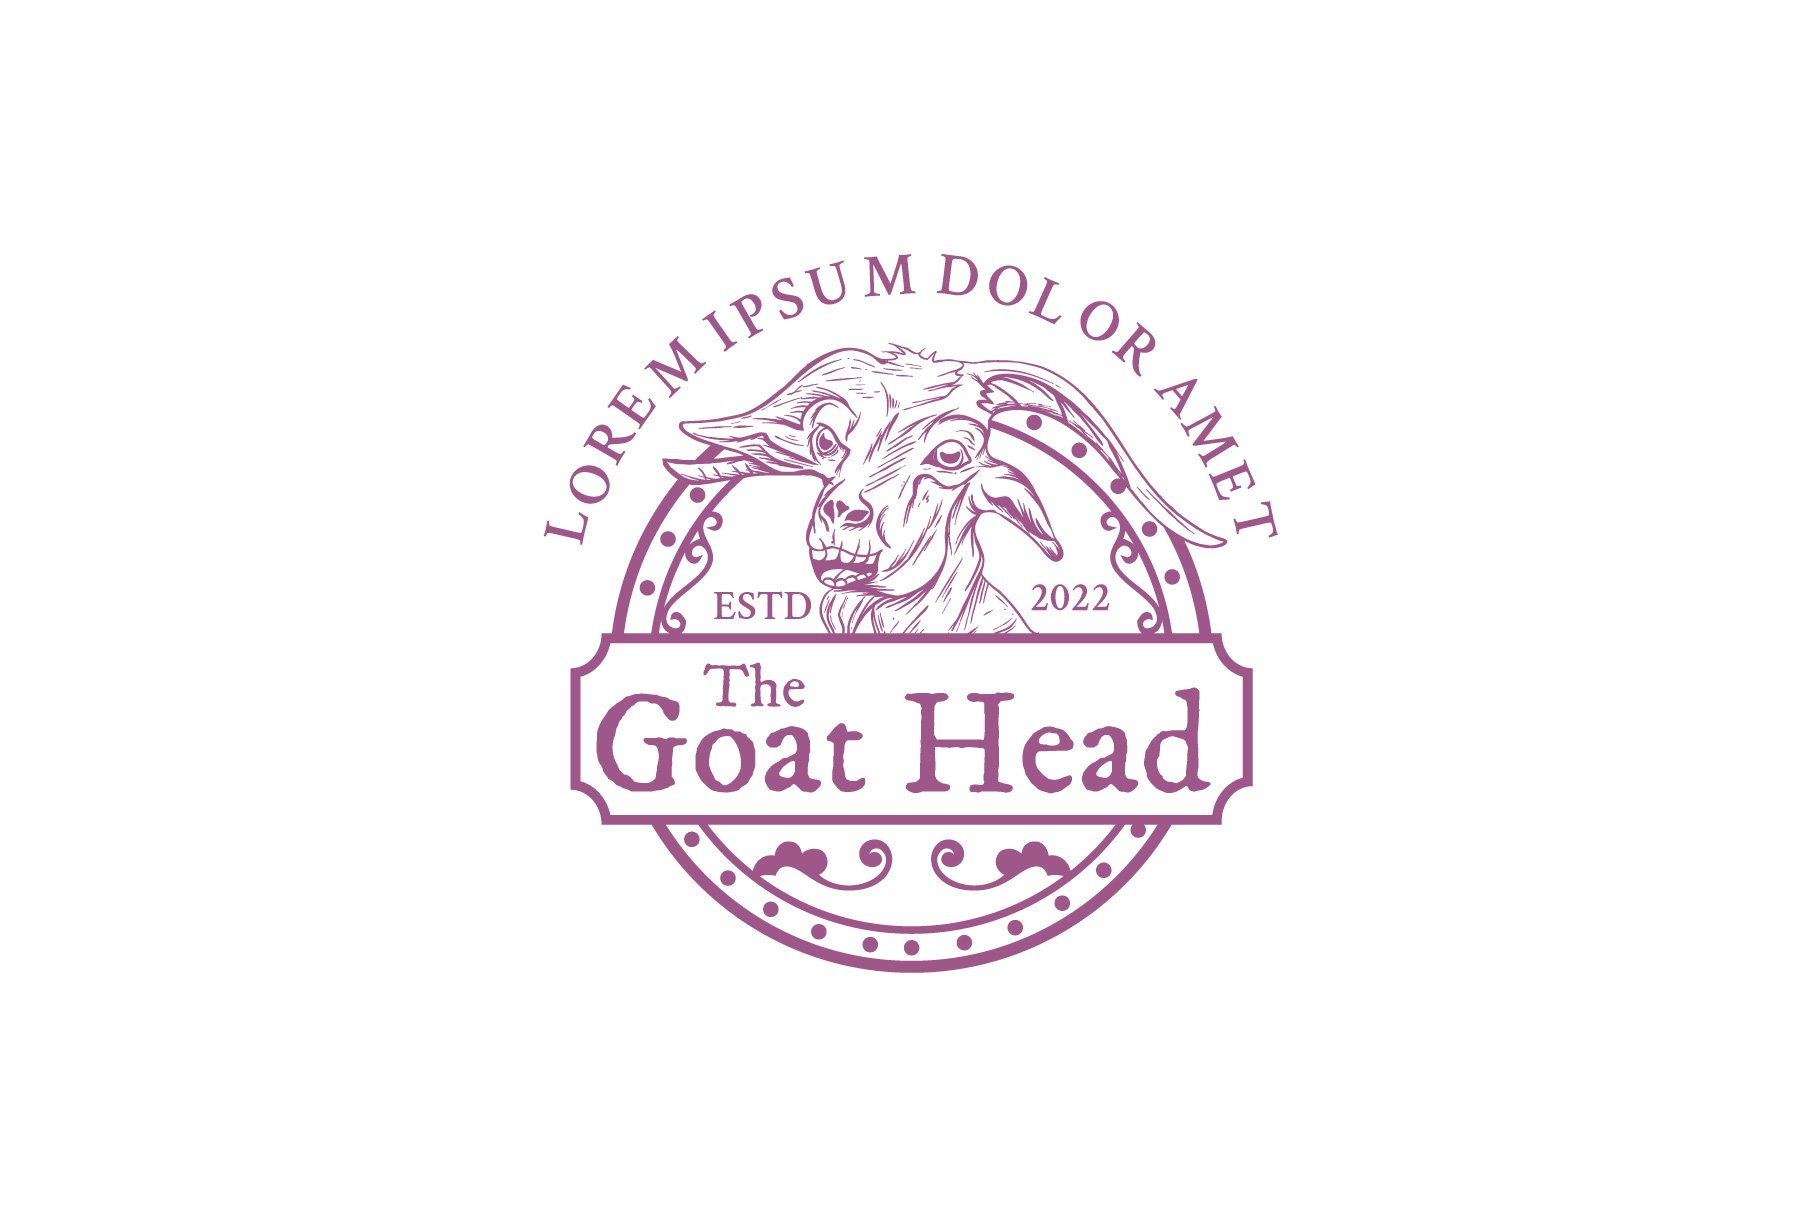 Goat Head Vintage Emblem Logo cover image.